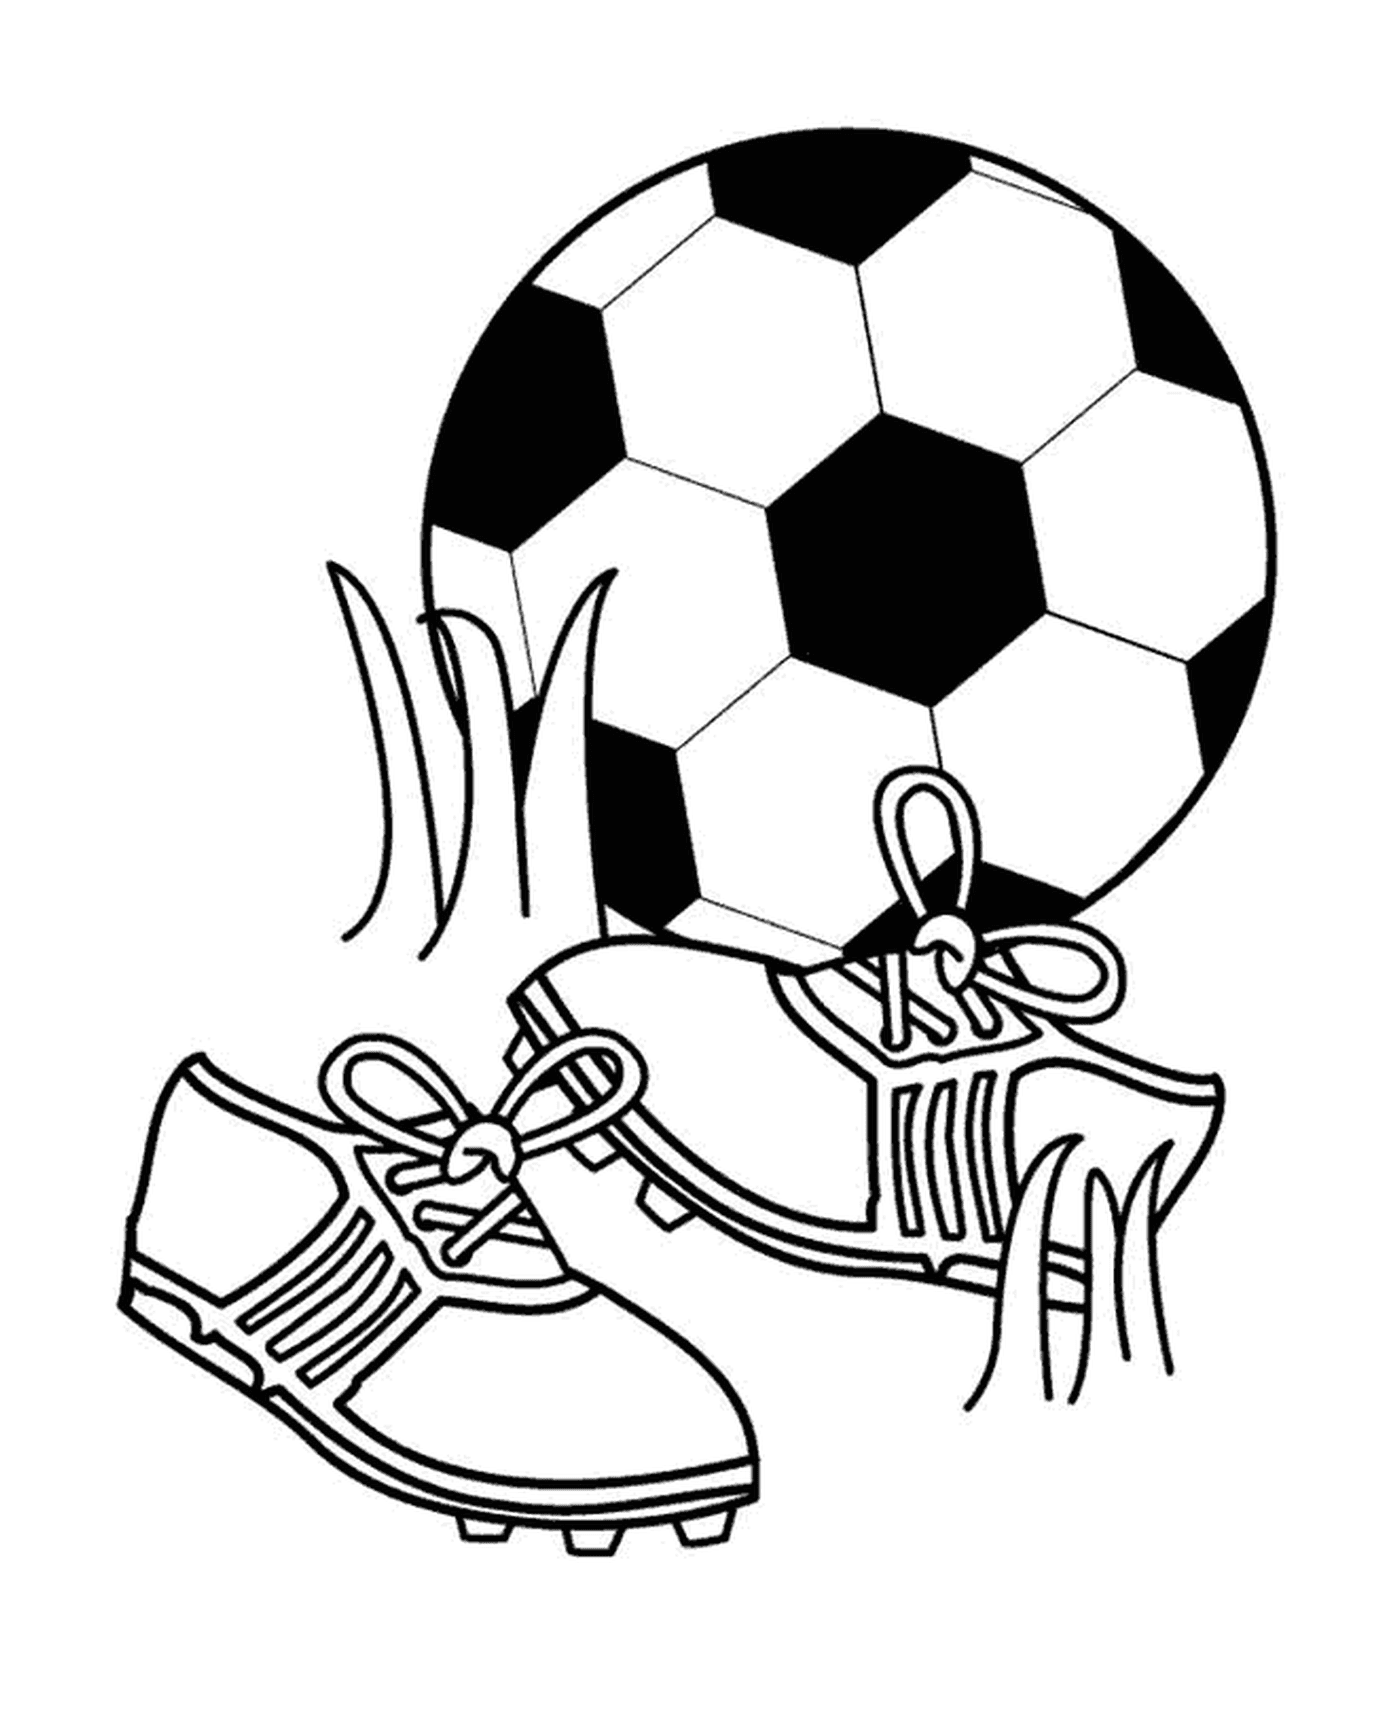  Deportes, fútbol y zapatos 